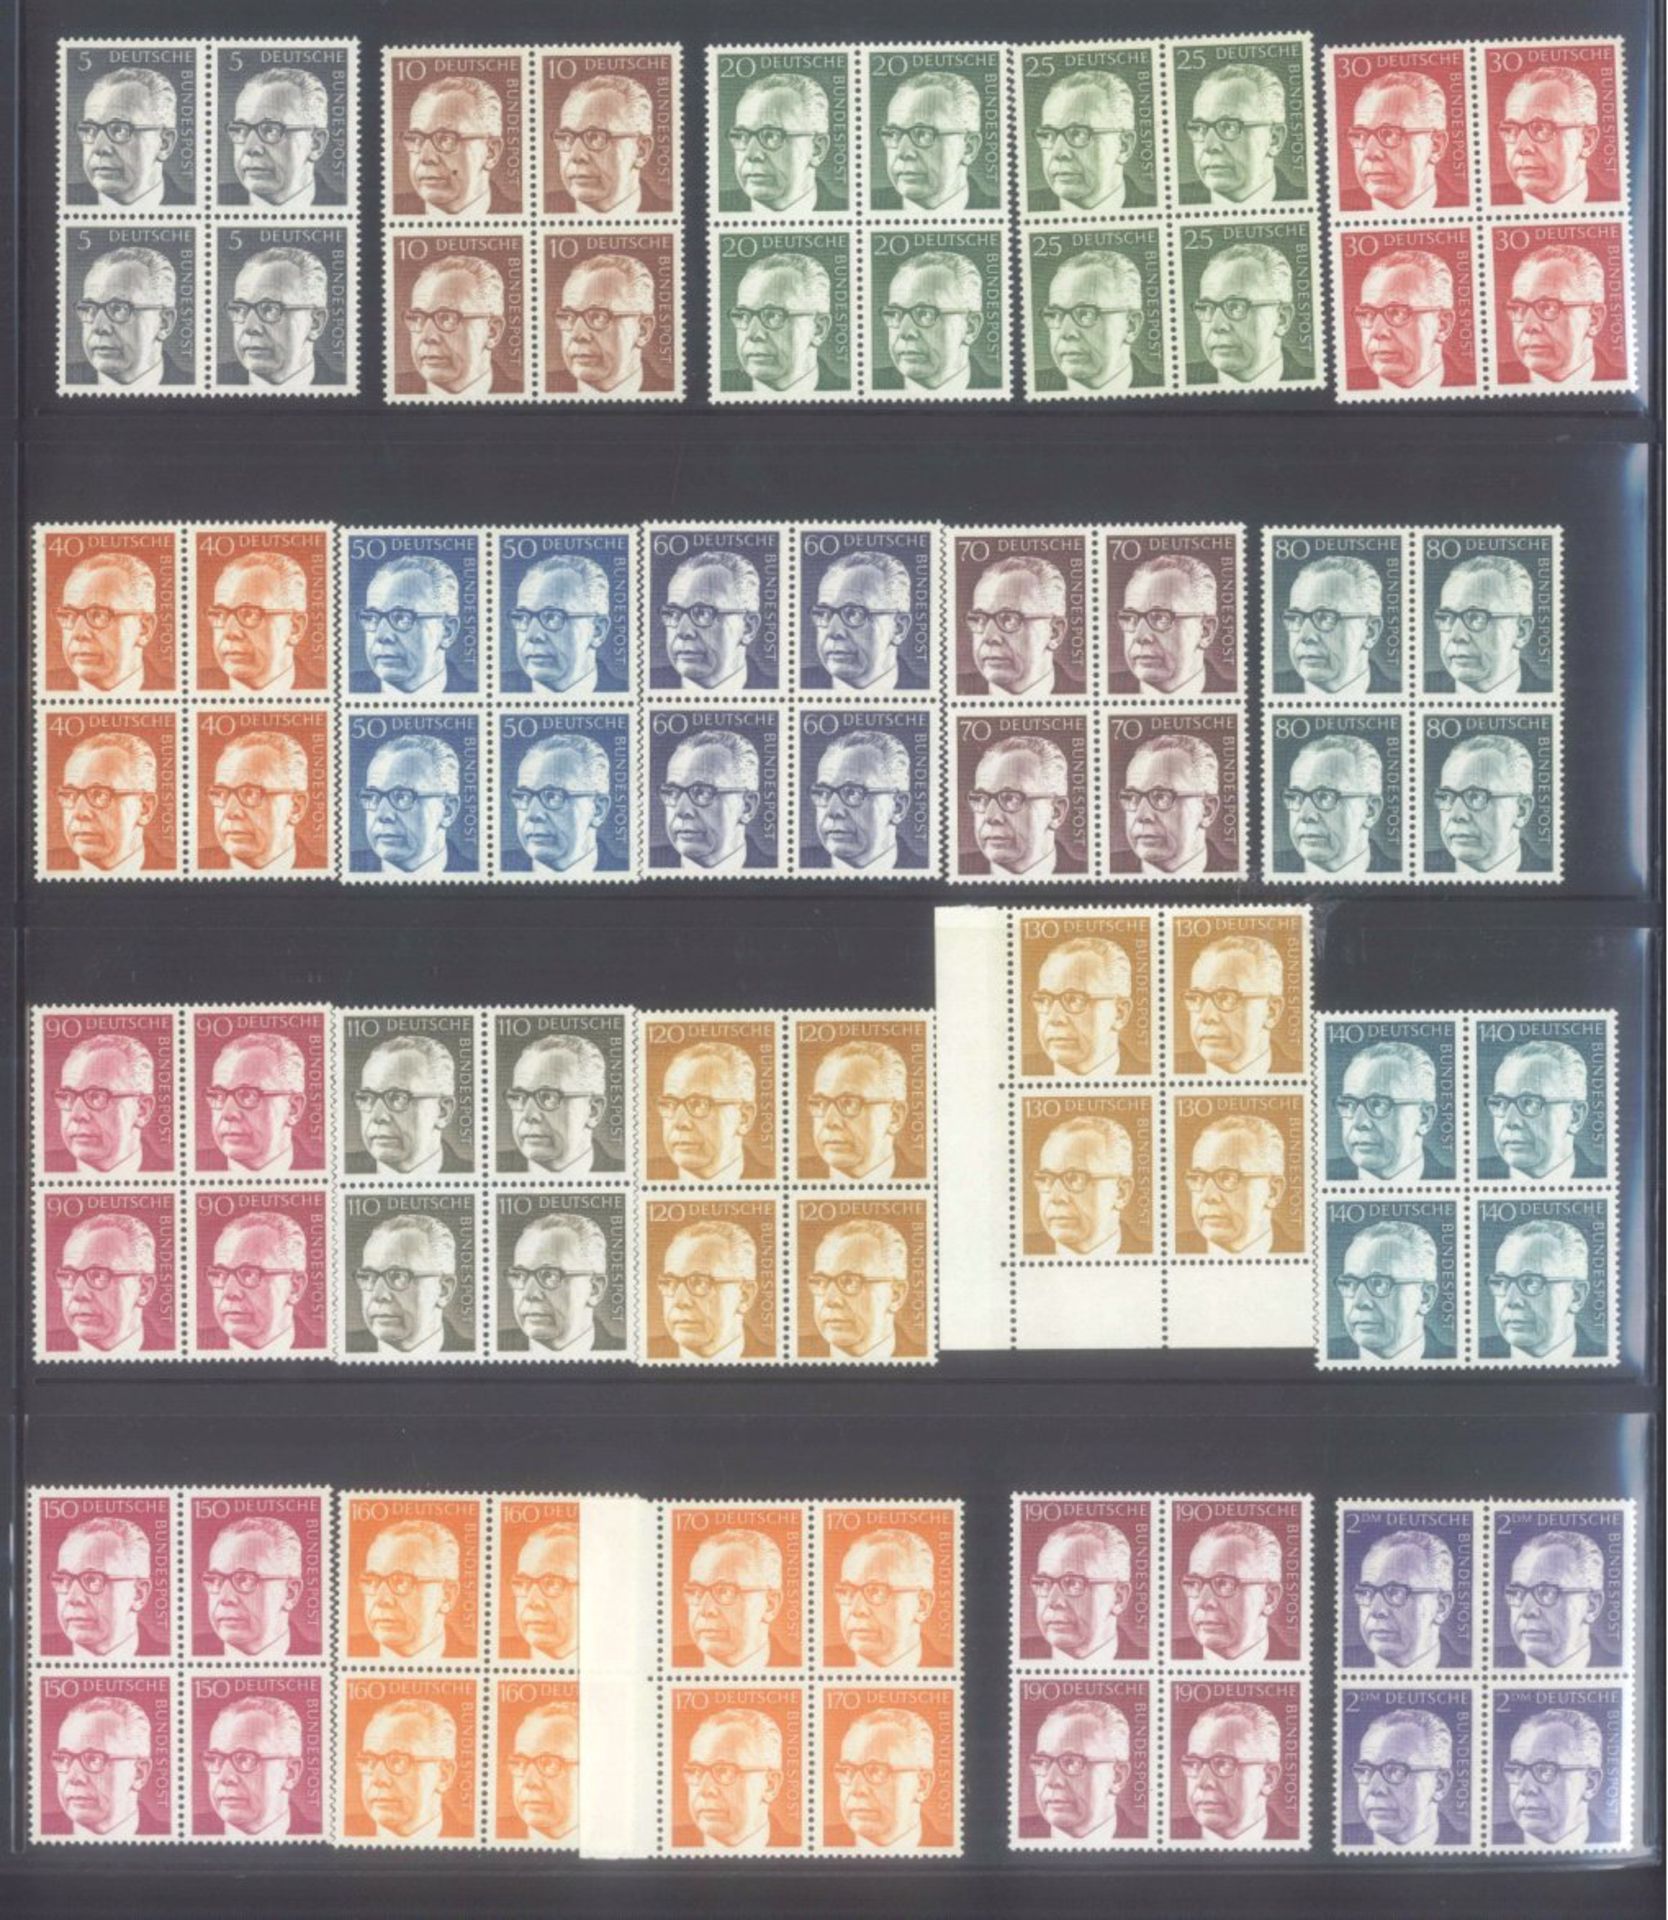 BUND 1961-1997 VIERER-BLOCKS von Dauerserienschöne postfrische Sammlung ab Bedeutende Deutsche, - Bild 3 aus 10